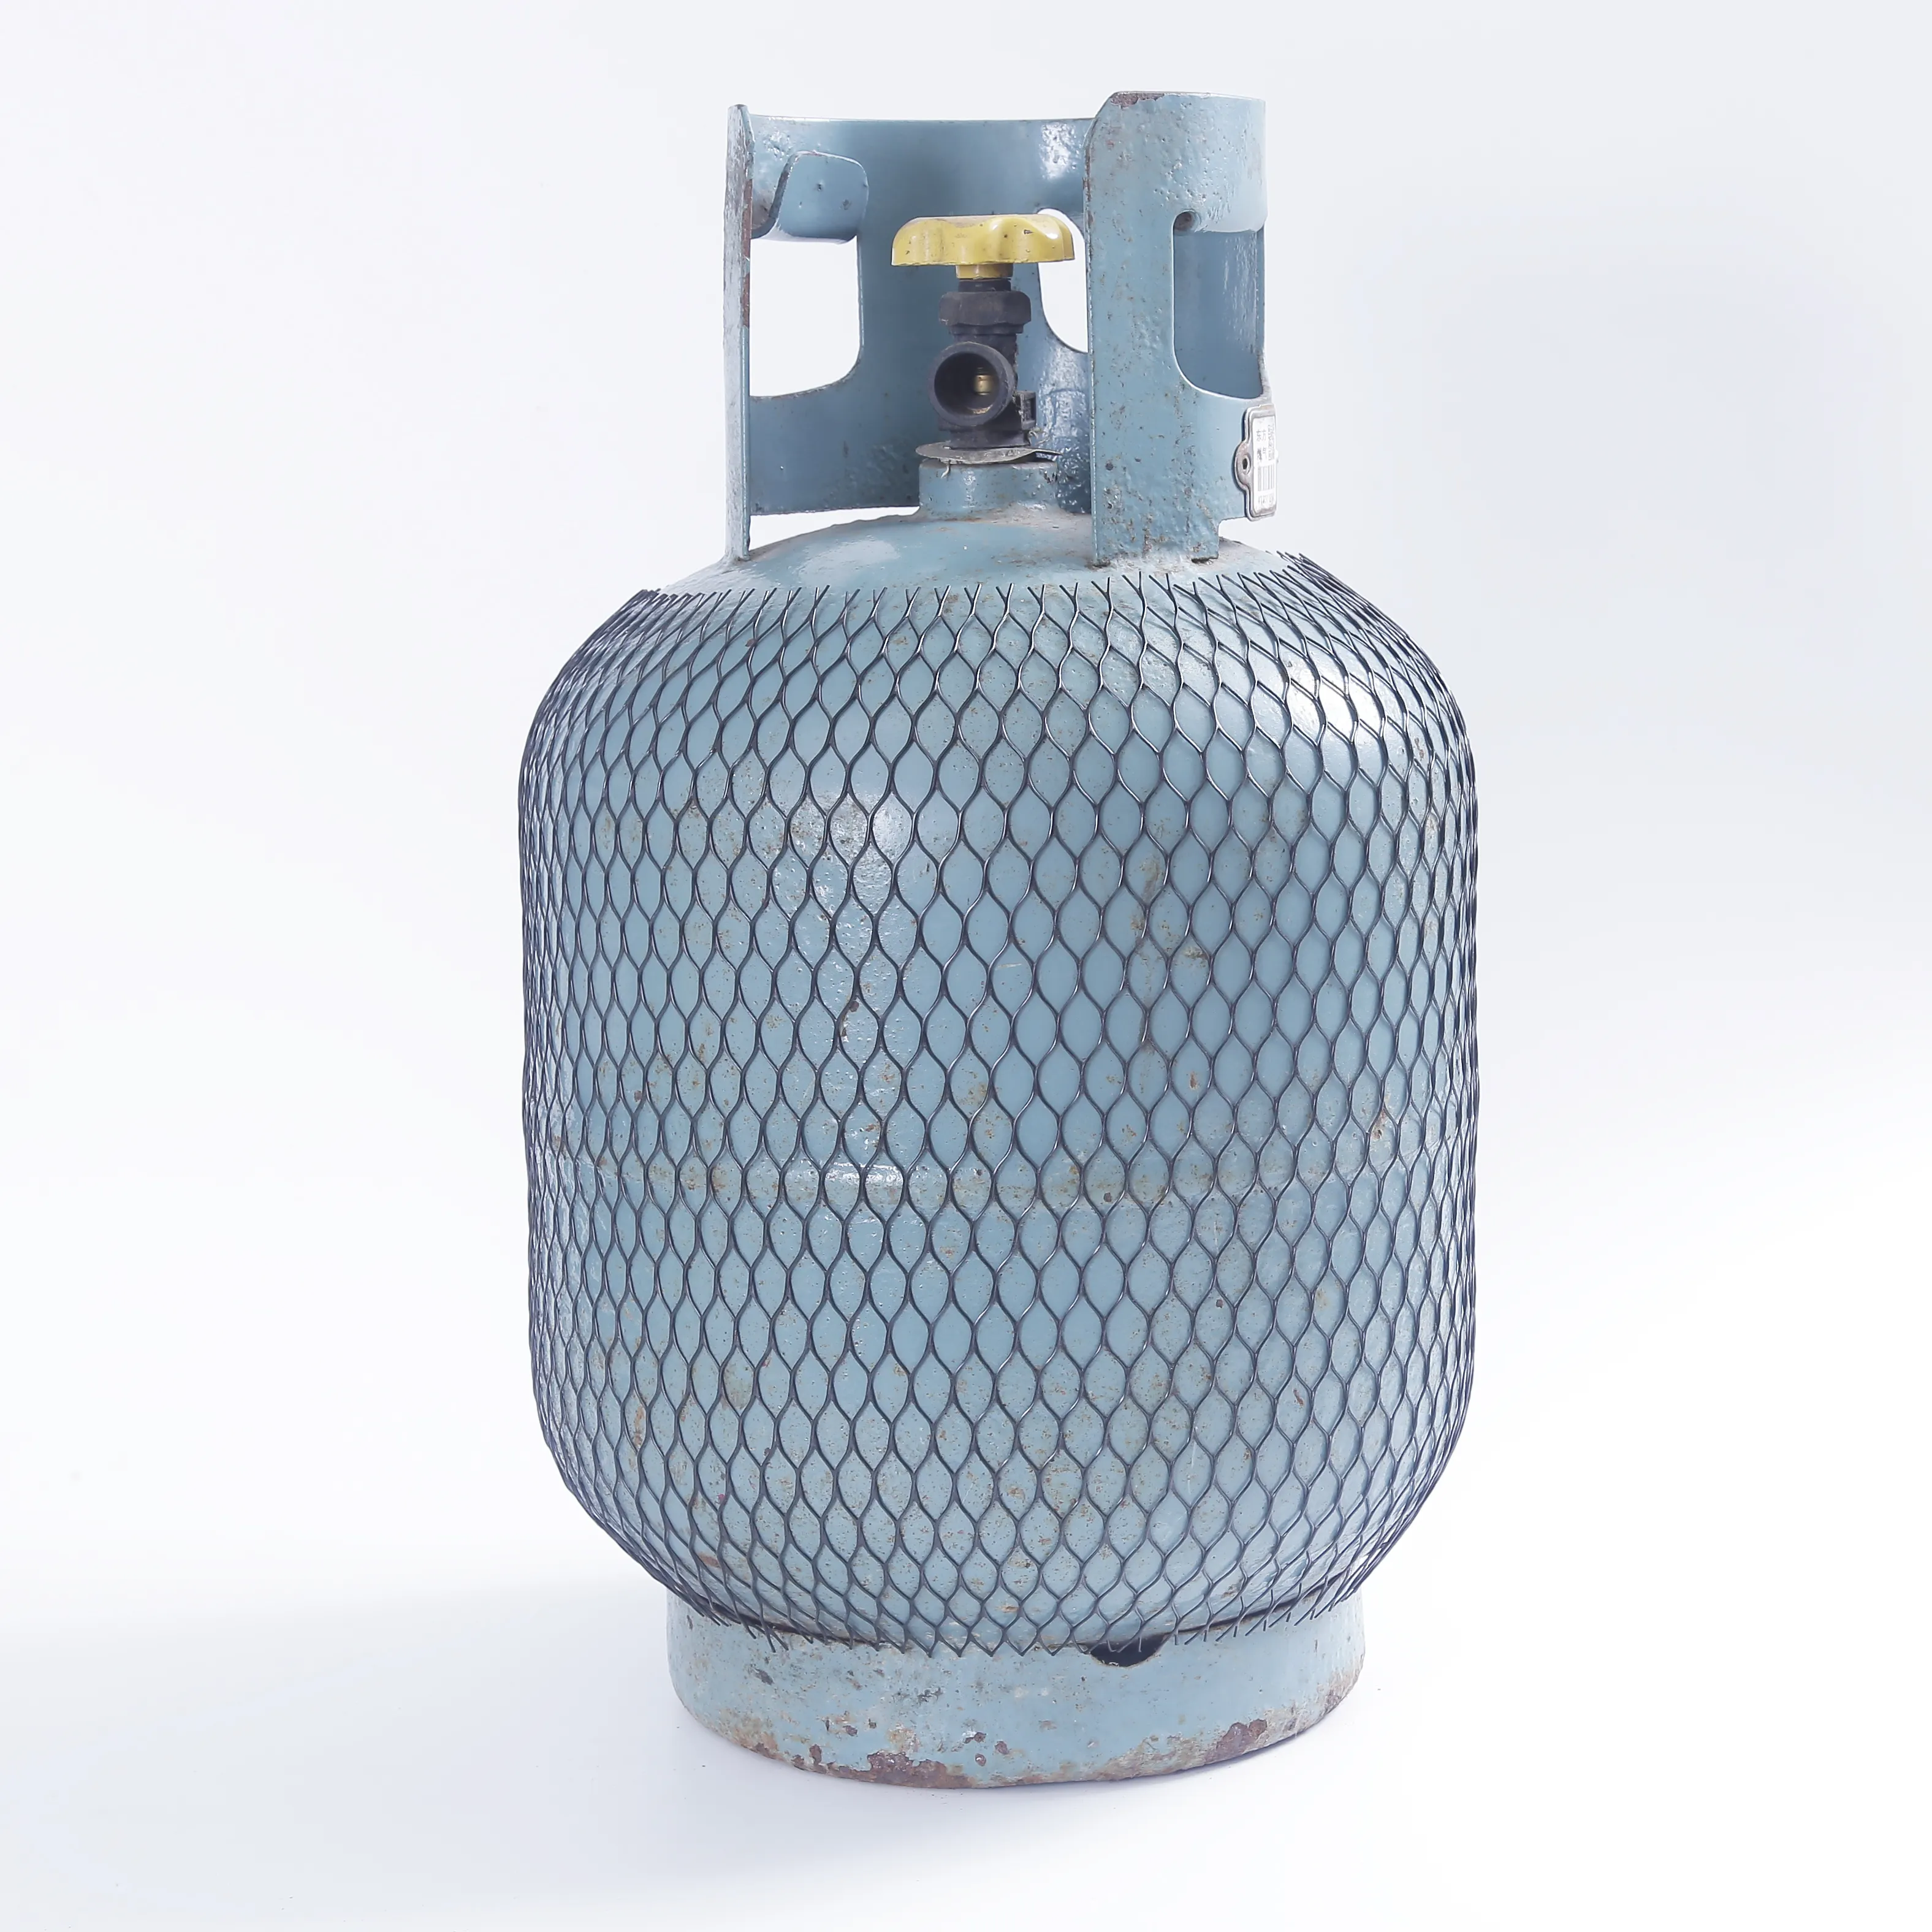 Nuevo material reciclable cilindro de gas de plástico de protección de malla de manga protectora de extrusión